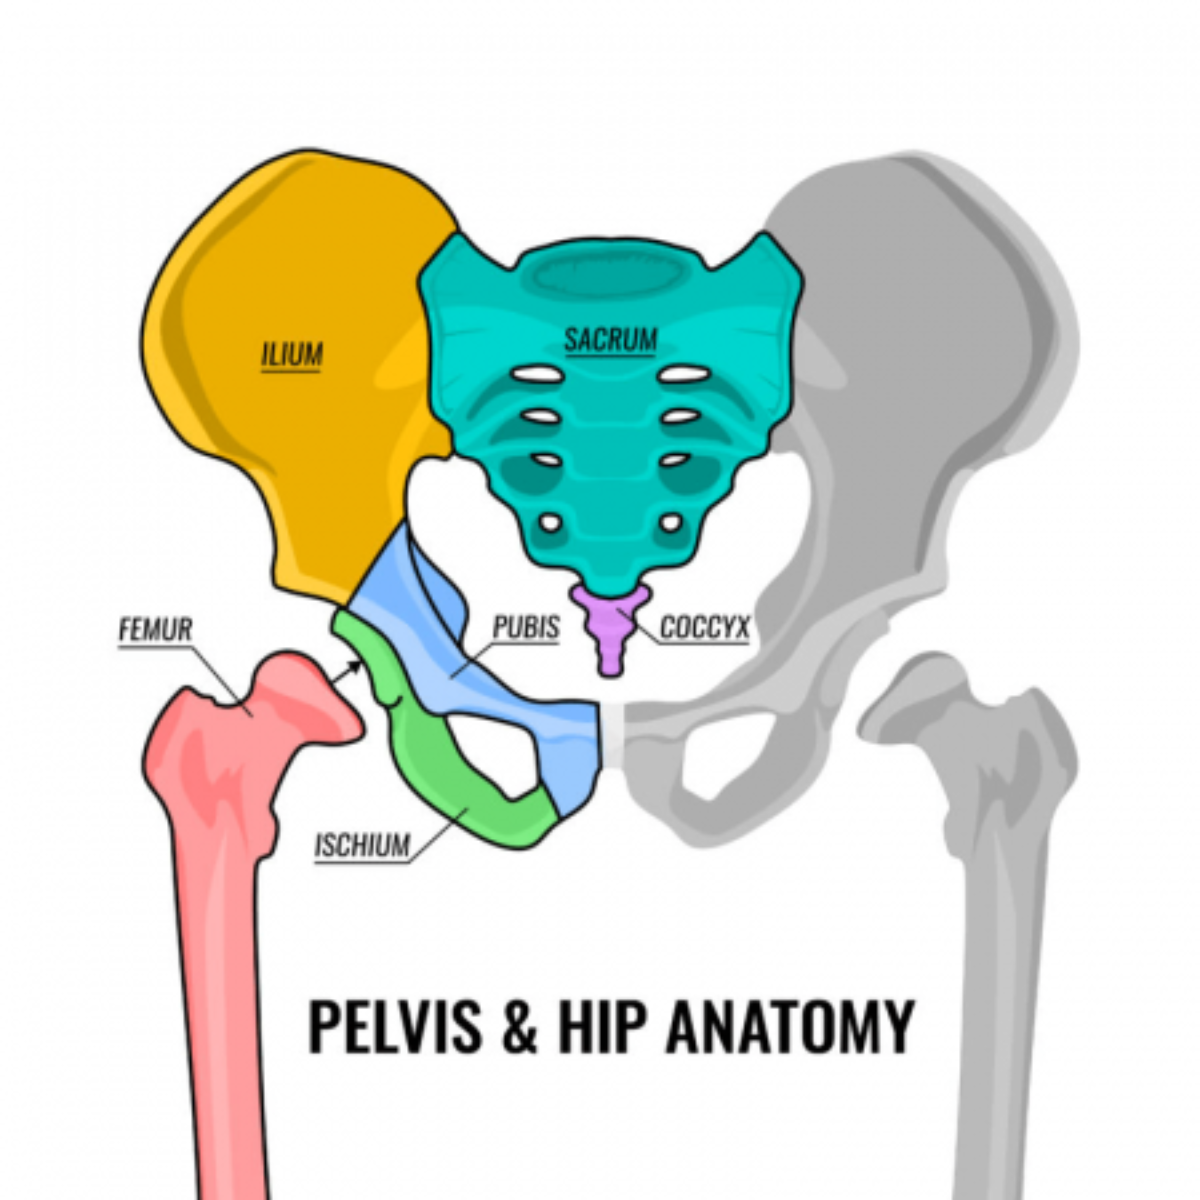 The Hip Bone - Ilium - Ischium - Pubis - TeachMeAnatomy